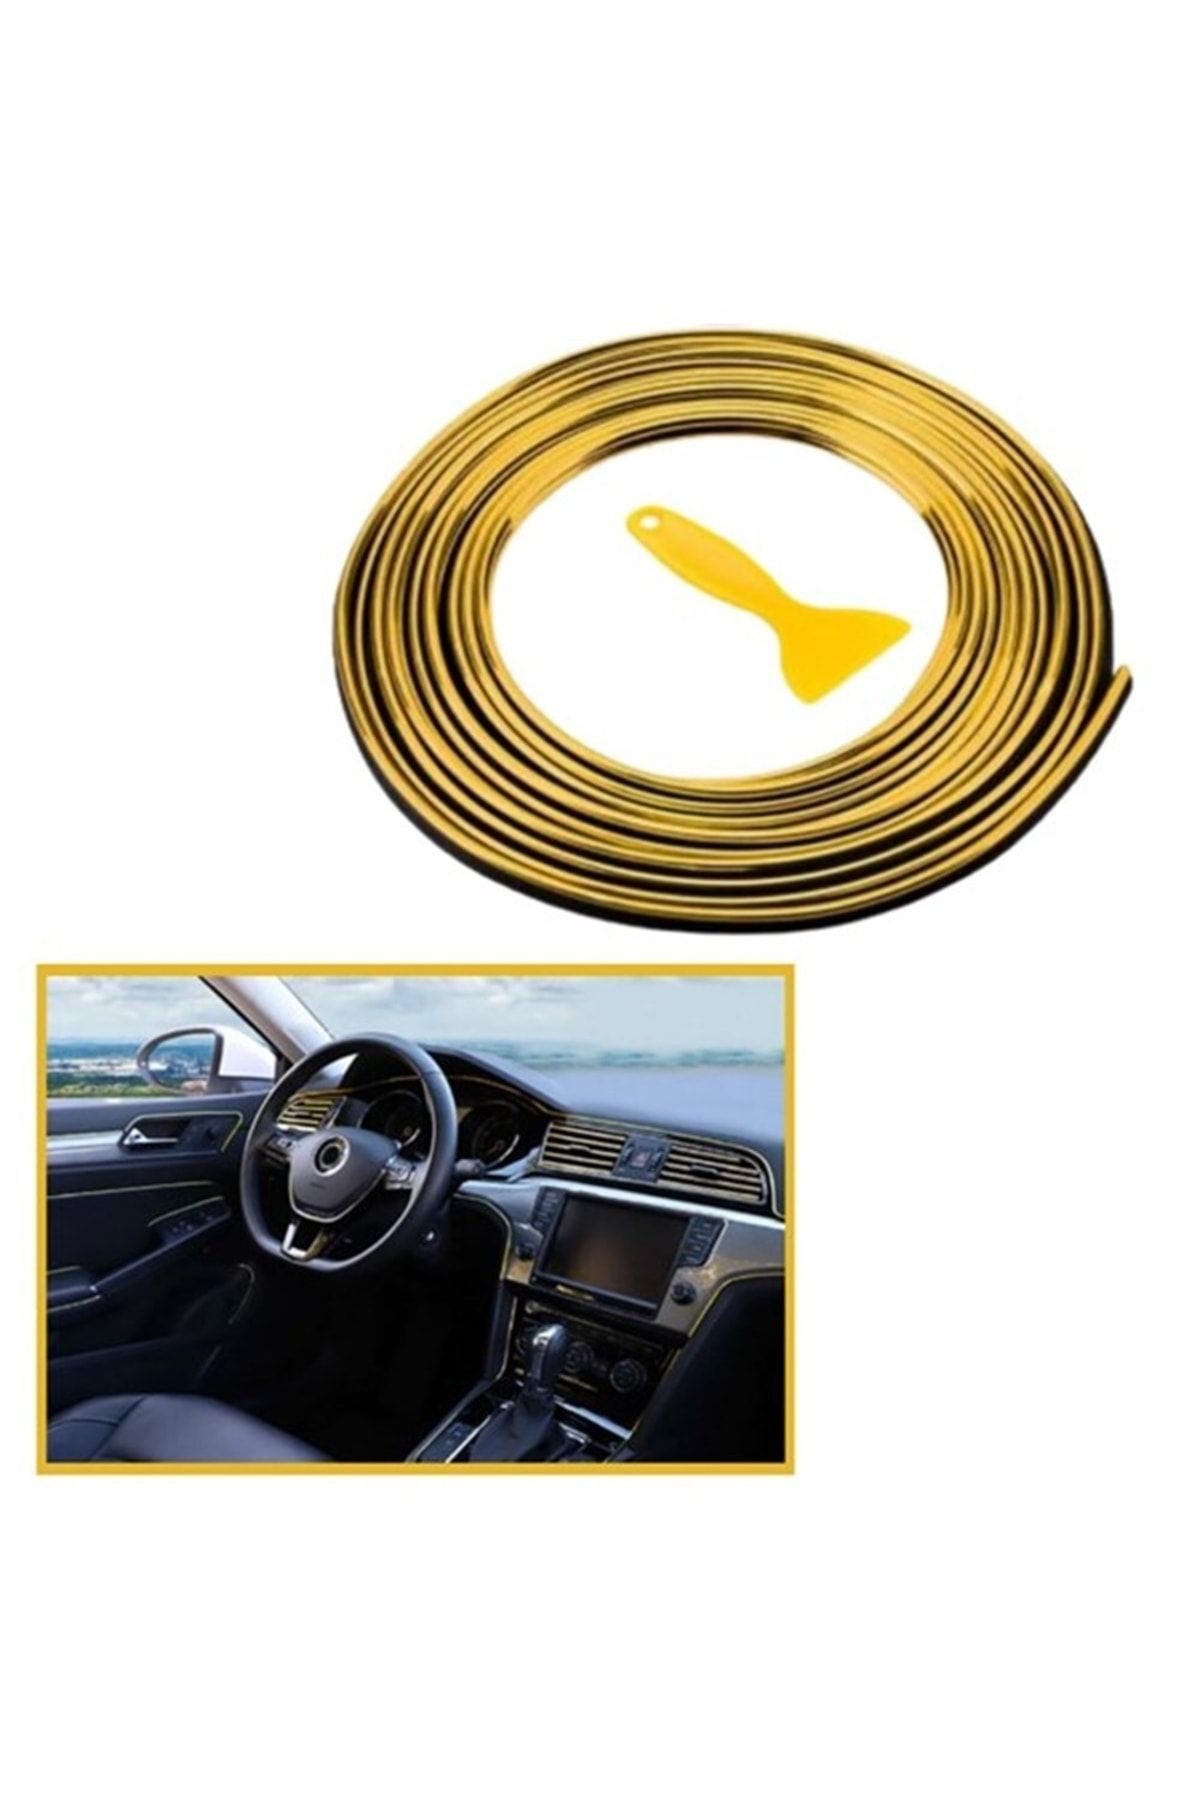 Genel Markalar Oto Araç Dekorasyon Şeridi Kauçuk Elastik Kolay Kurulum 5 Metre Şerit Bant Gold Renk